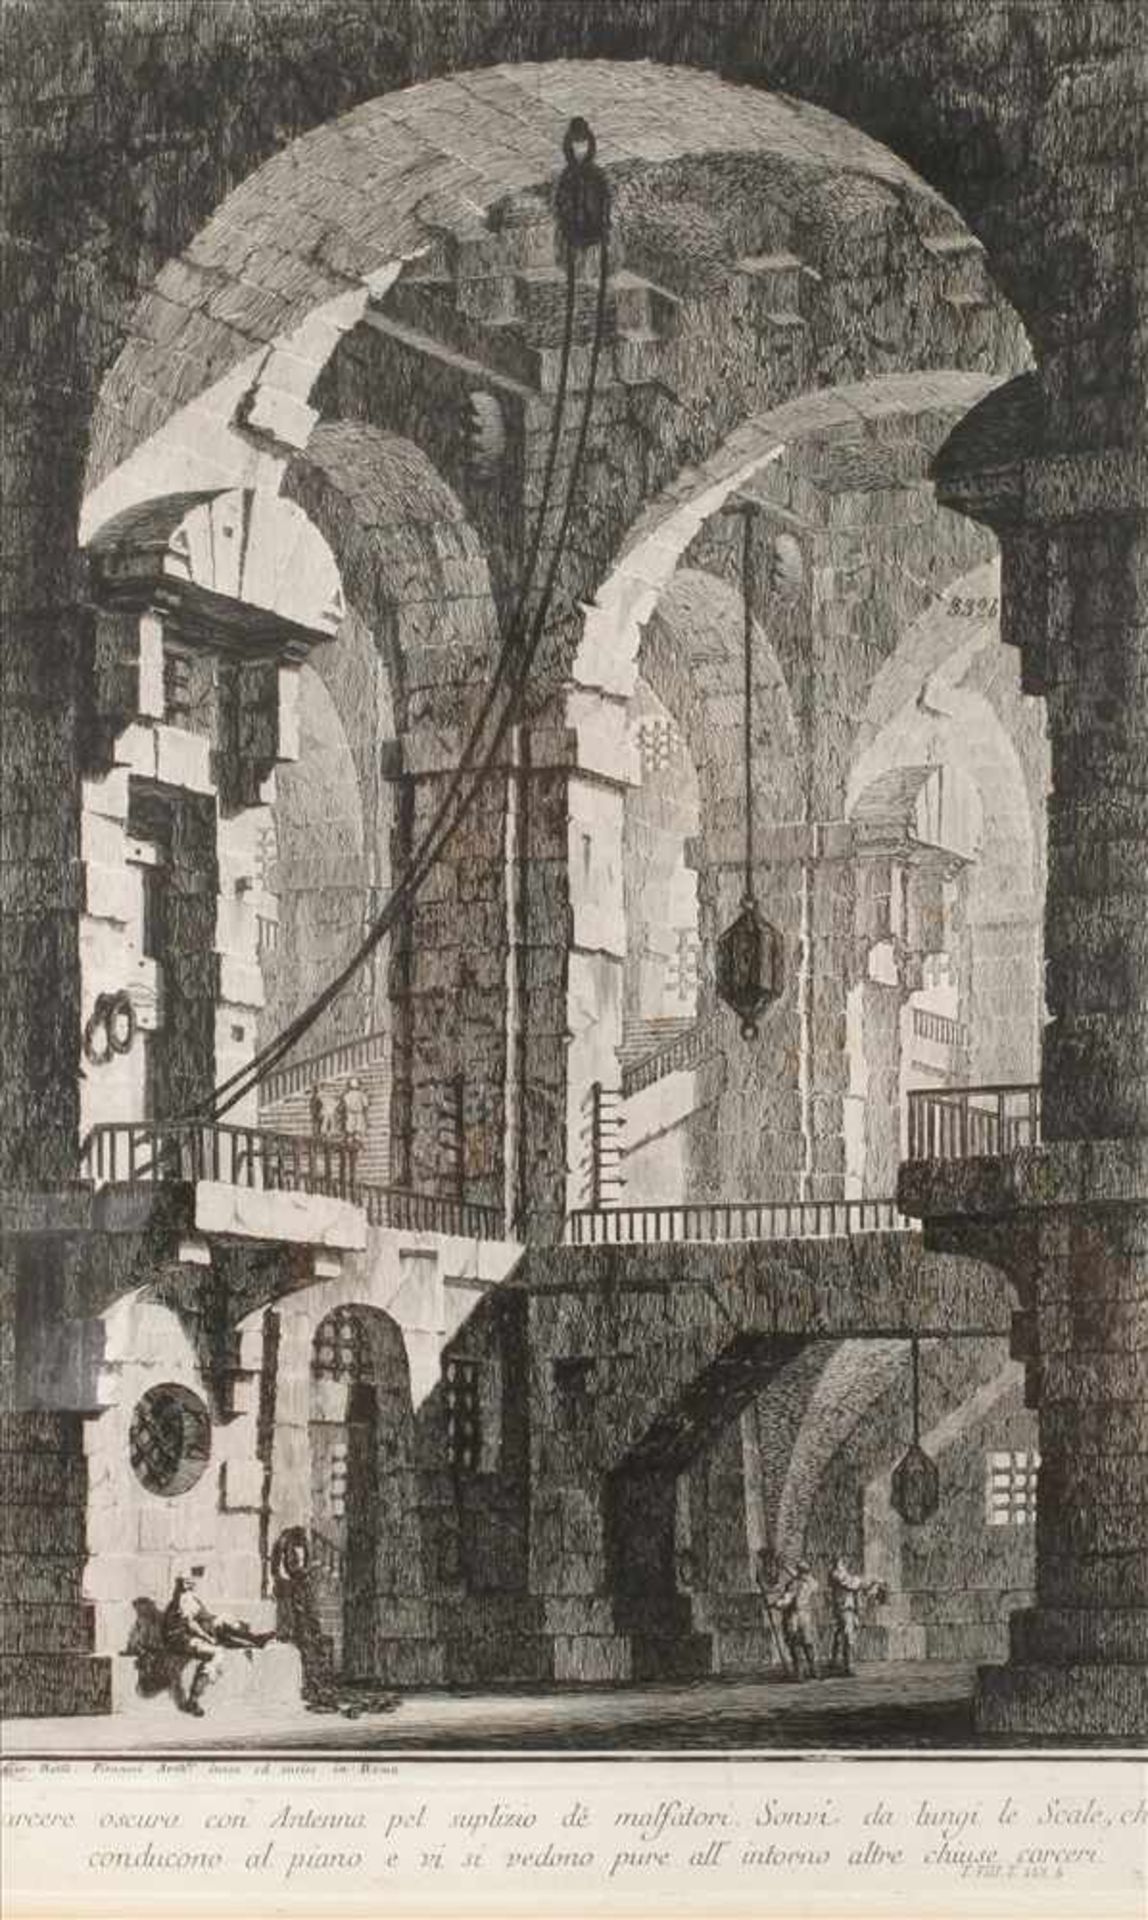 Giovanni Battista Piranesi, "Carcere oscura..."hoher, massiver, kellerähnlicher Gewölberaum, unter